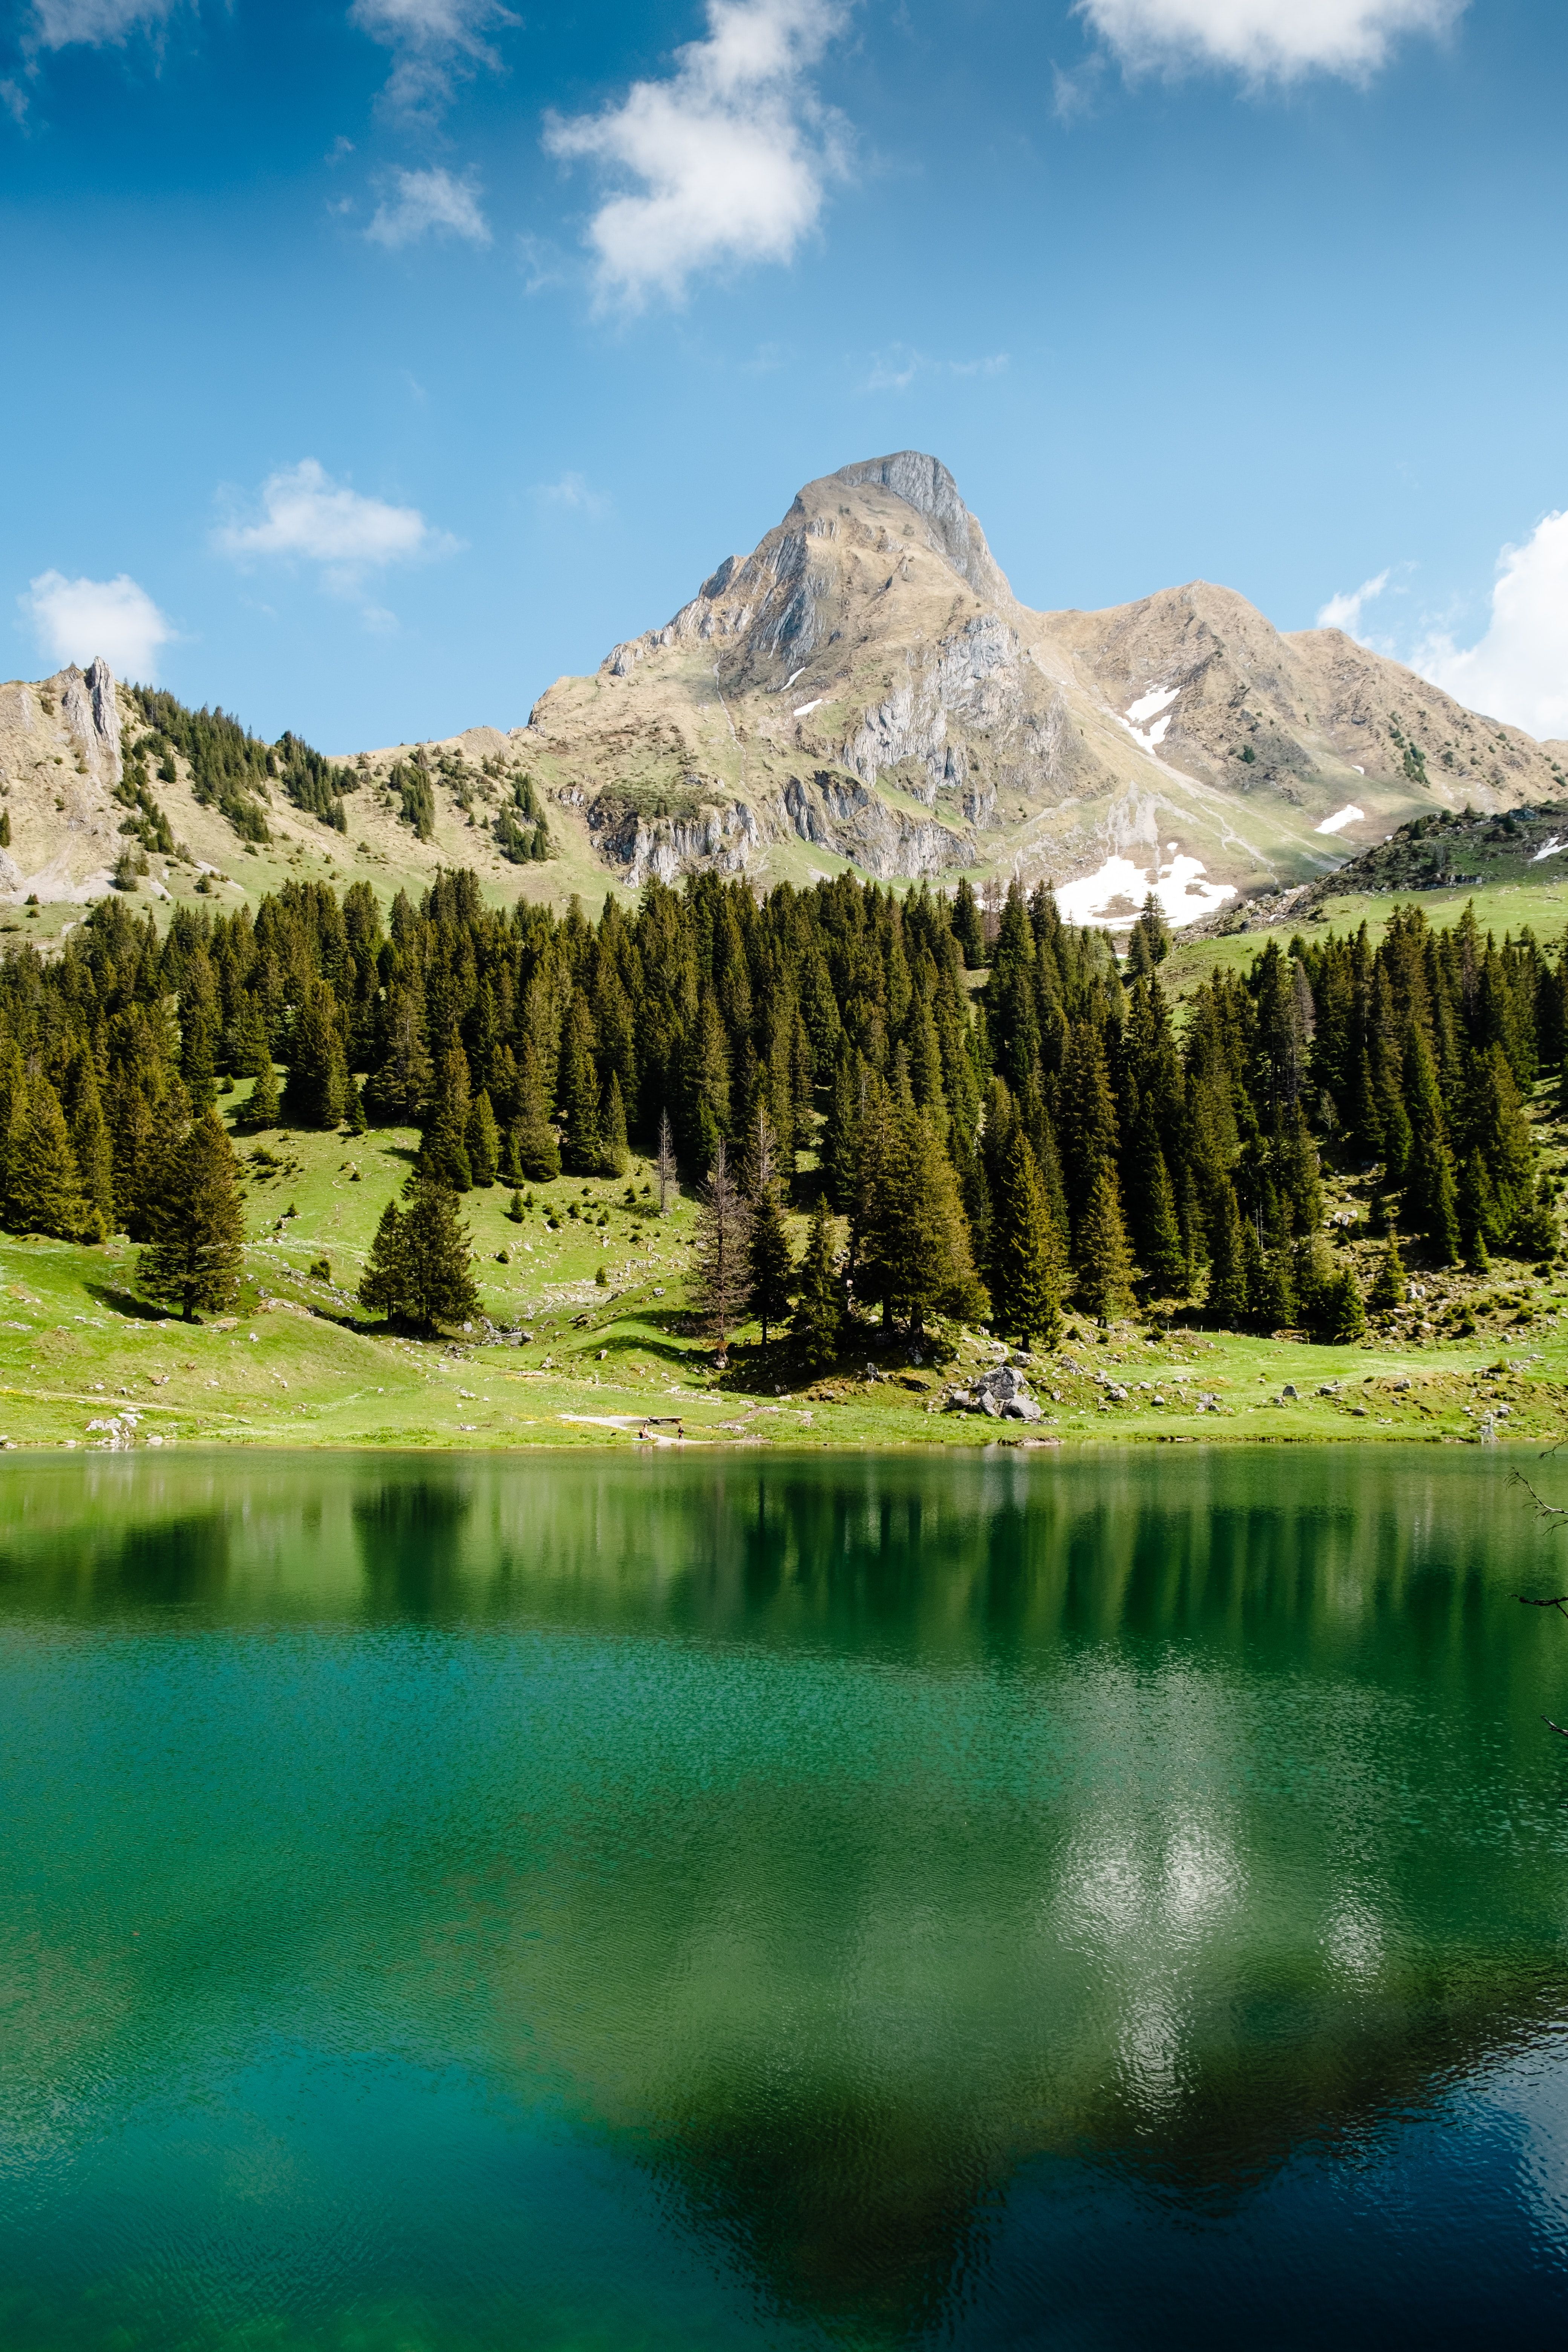 Gantrischseeli lake 4K Wallpaper, Pine trees, Spring, Reflection, Mountain, Peak, Switzerland, Nature